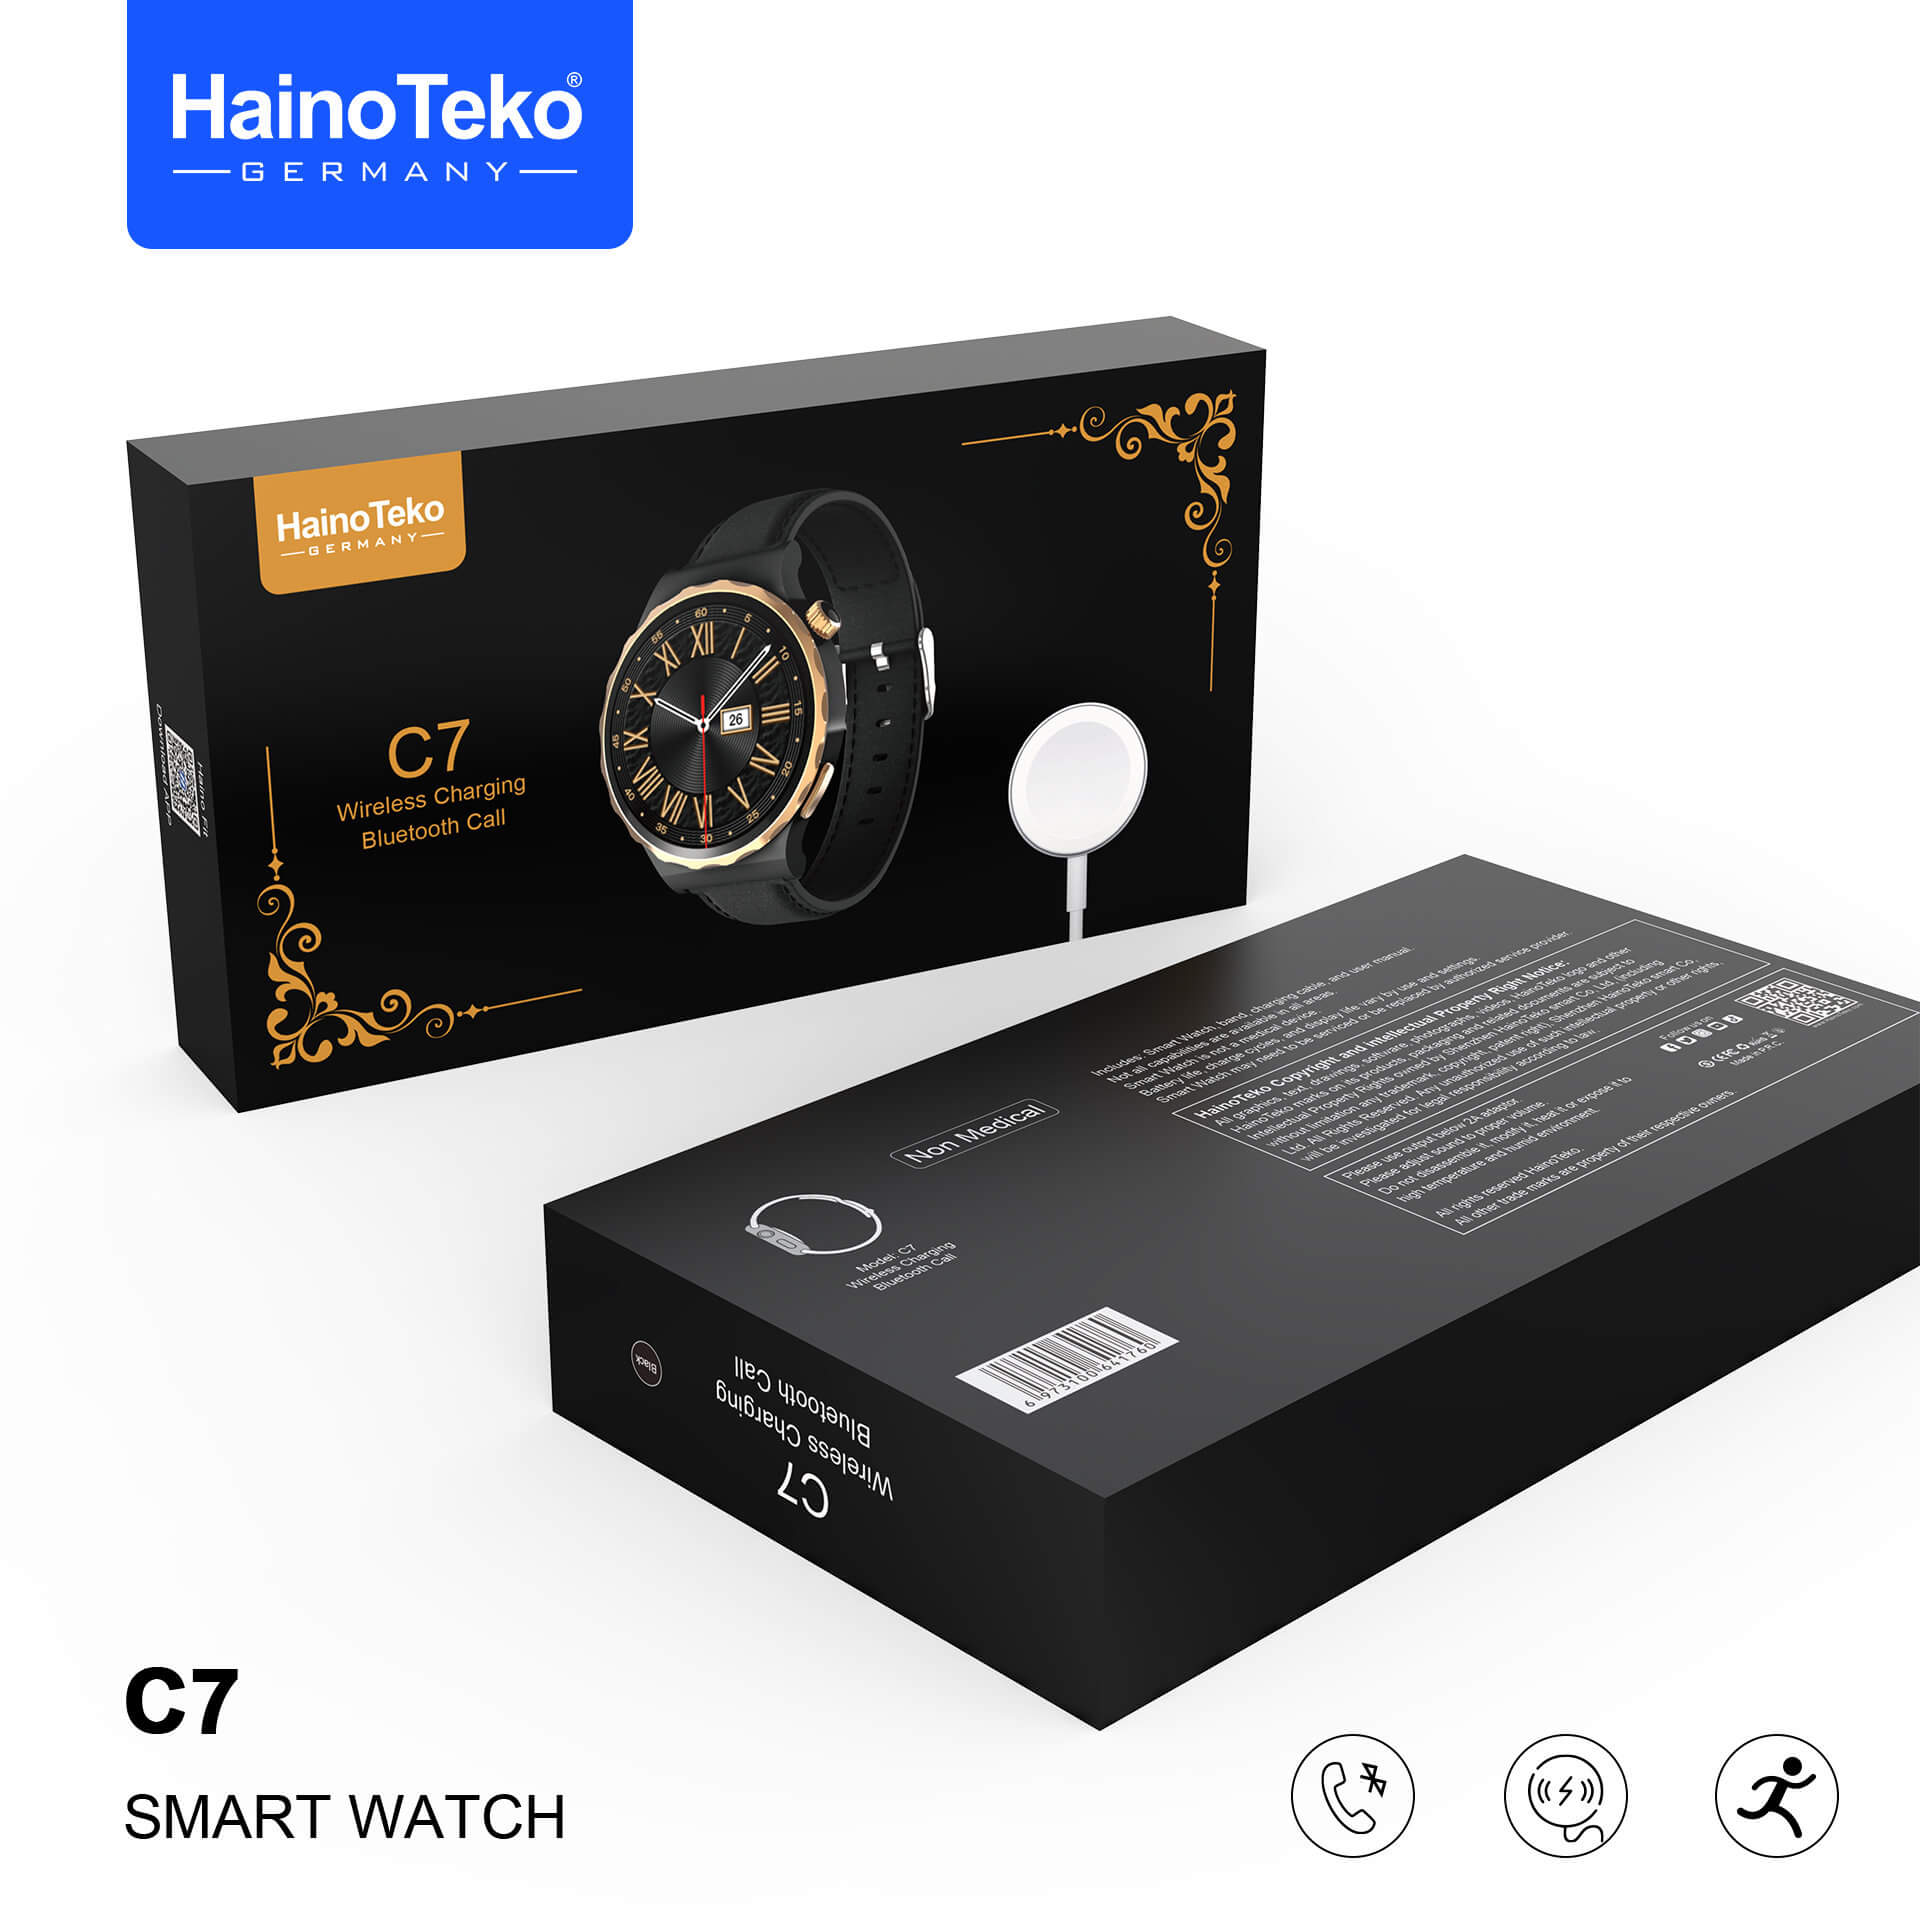 Haino Teko C7 smart watch